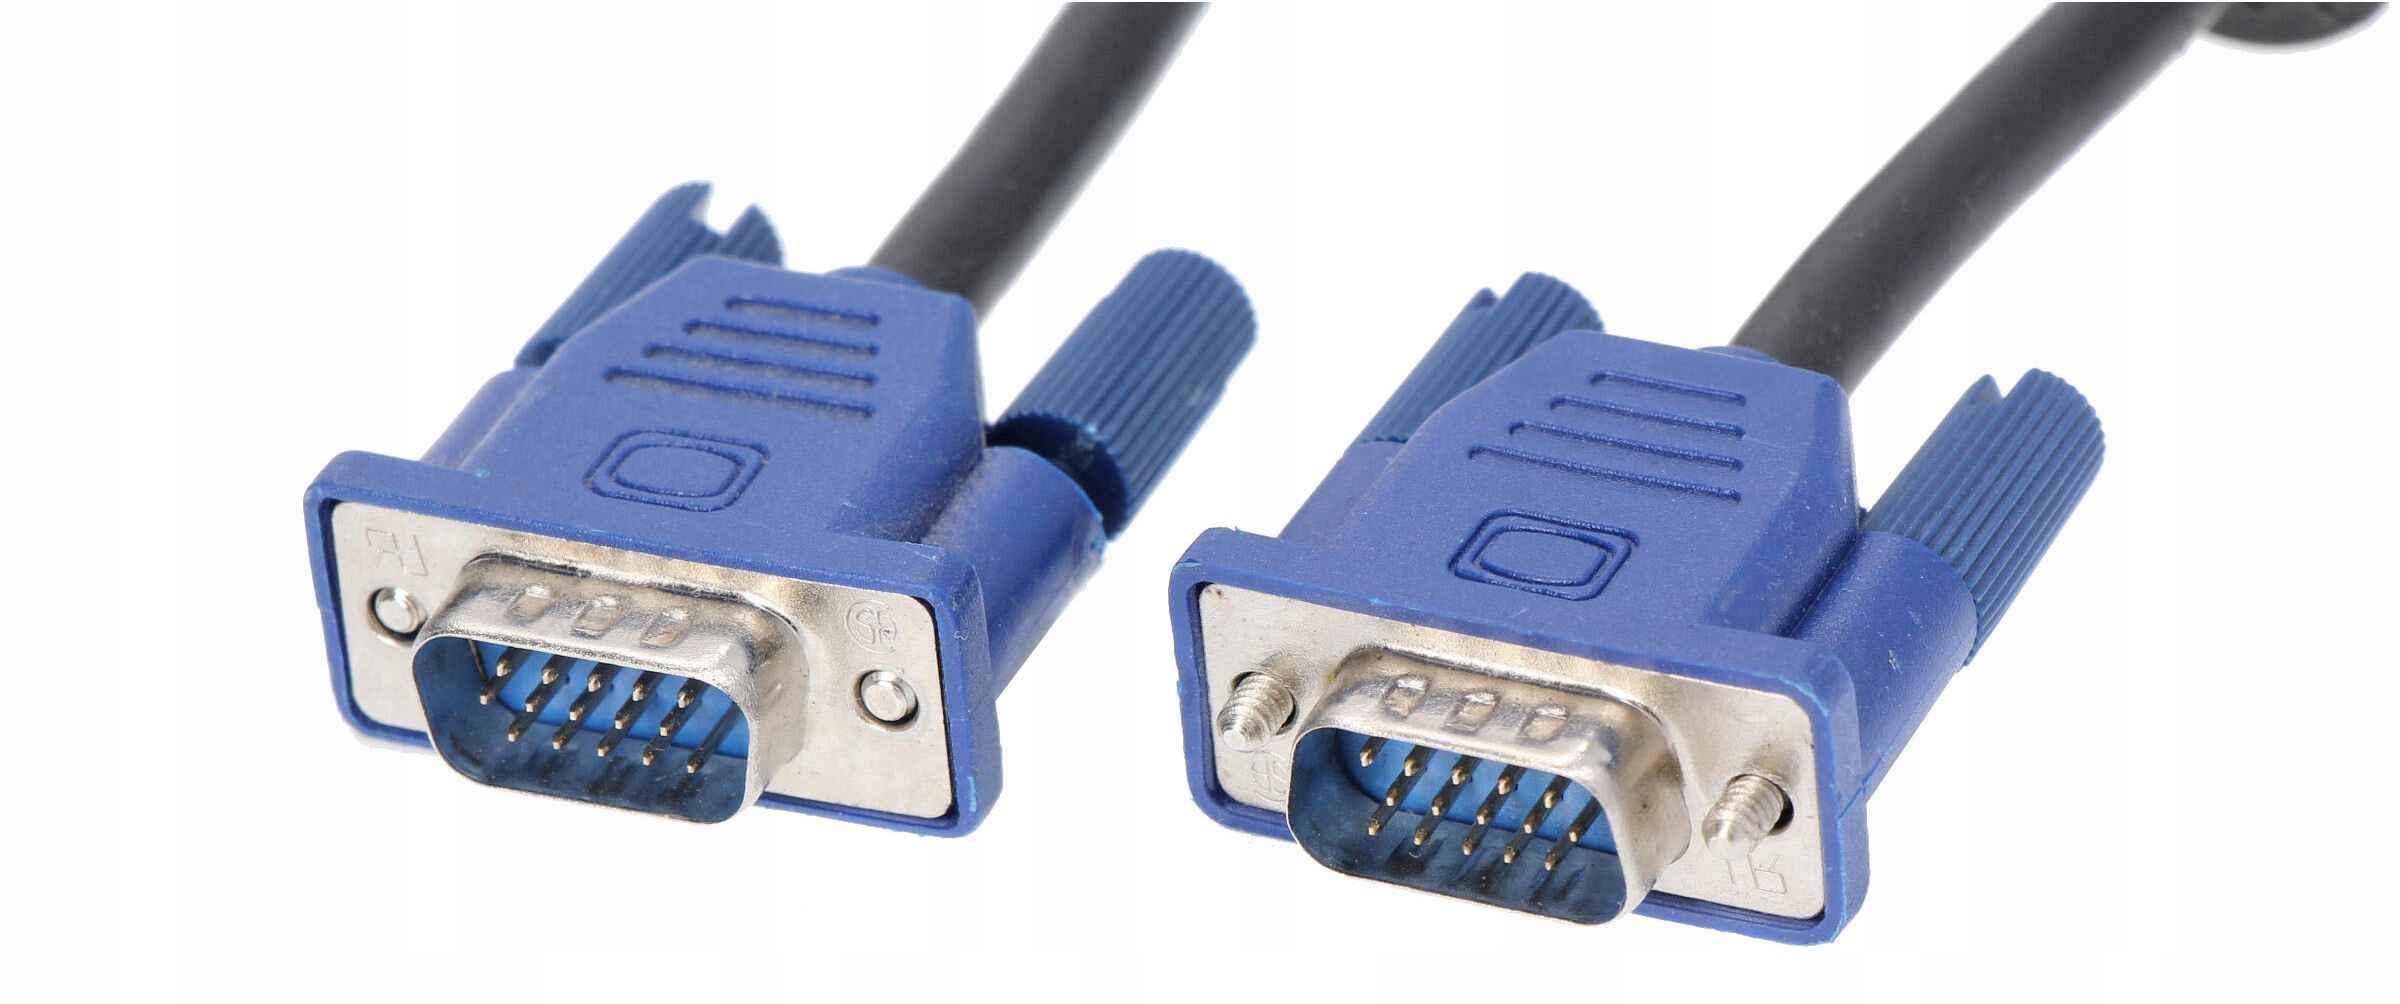 Kabel VGA D-sub - VGA D-sub